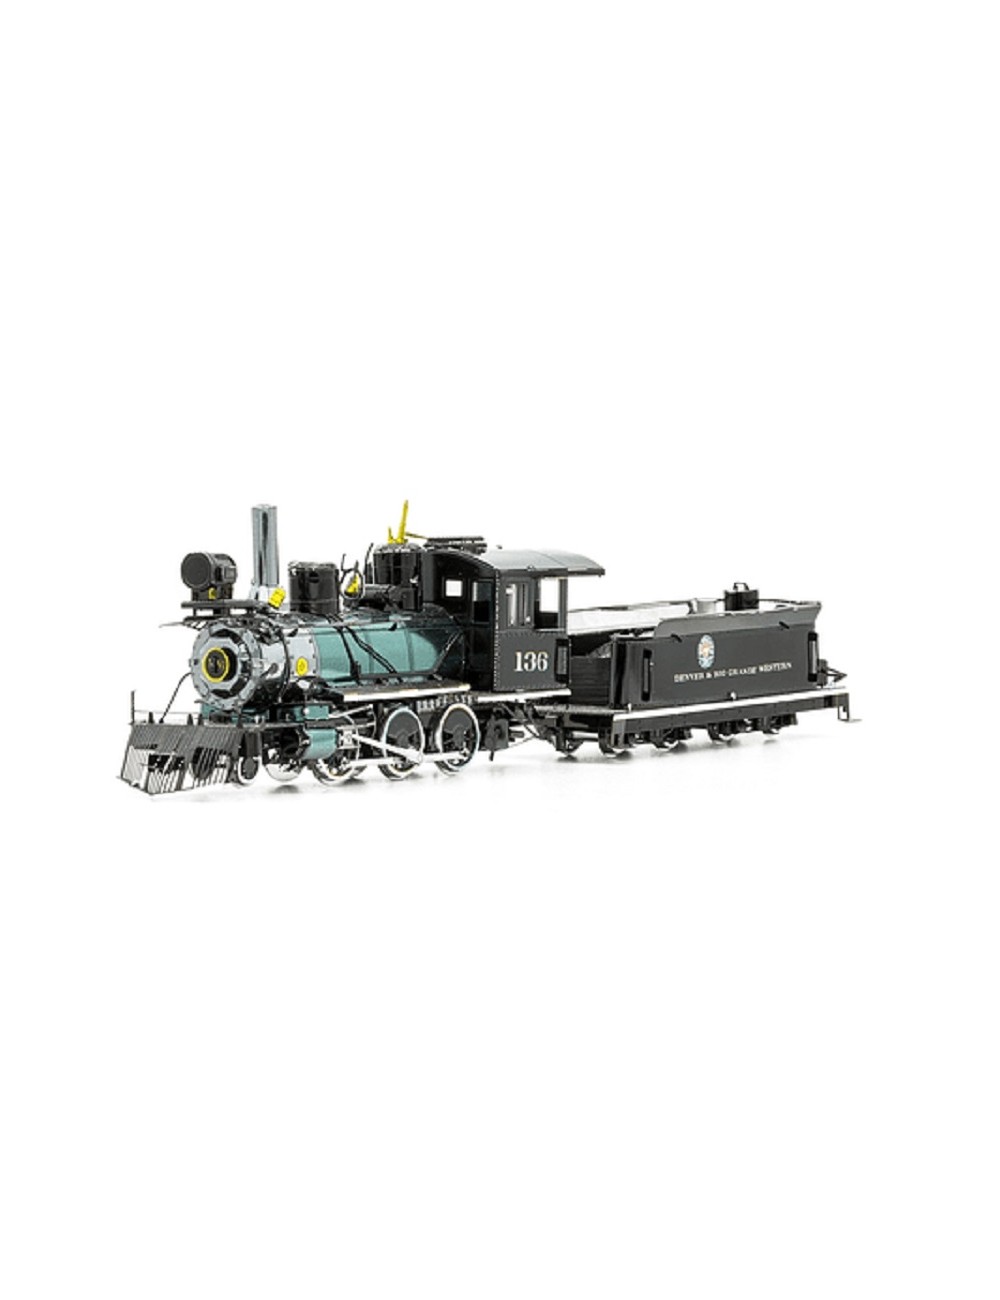 Tren Locomotora 2-6-0 MMS190 Metal Earth